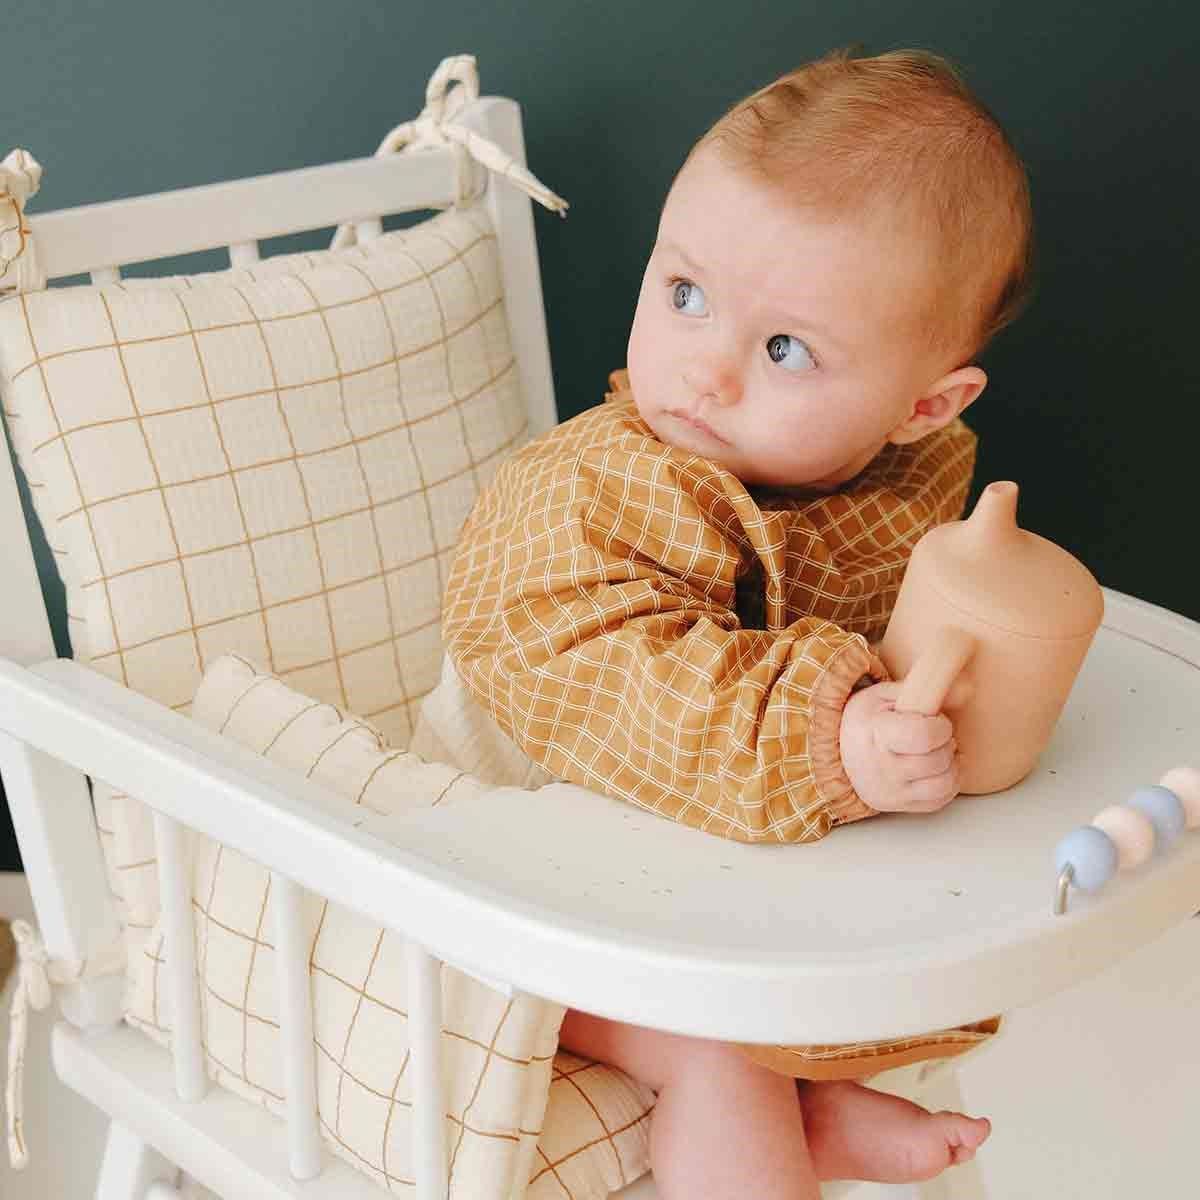 BEBECONFORT Timba baby, Transat bébé, compatible pour chaise haute